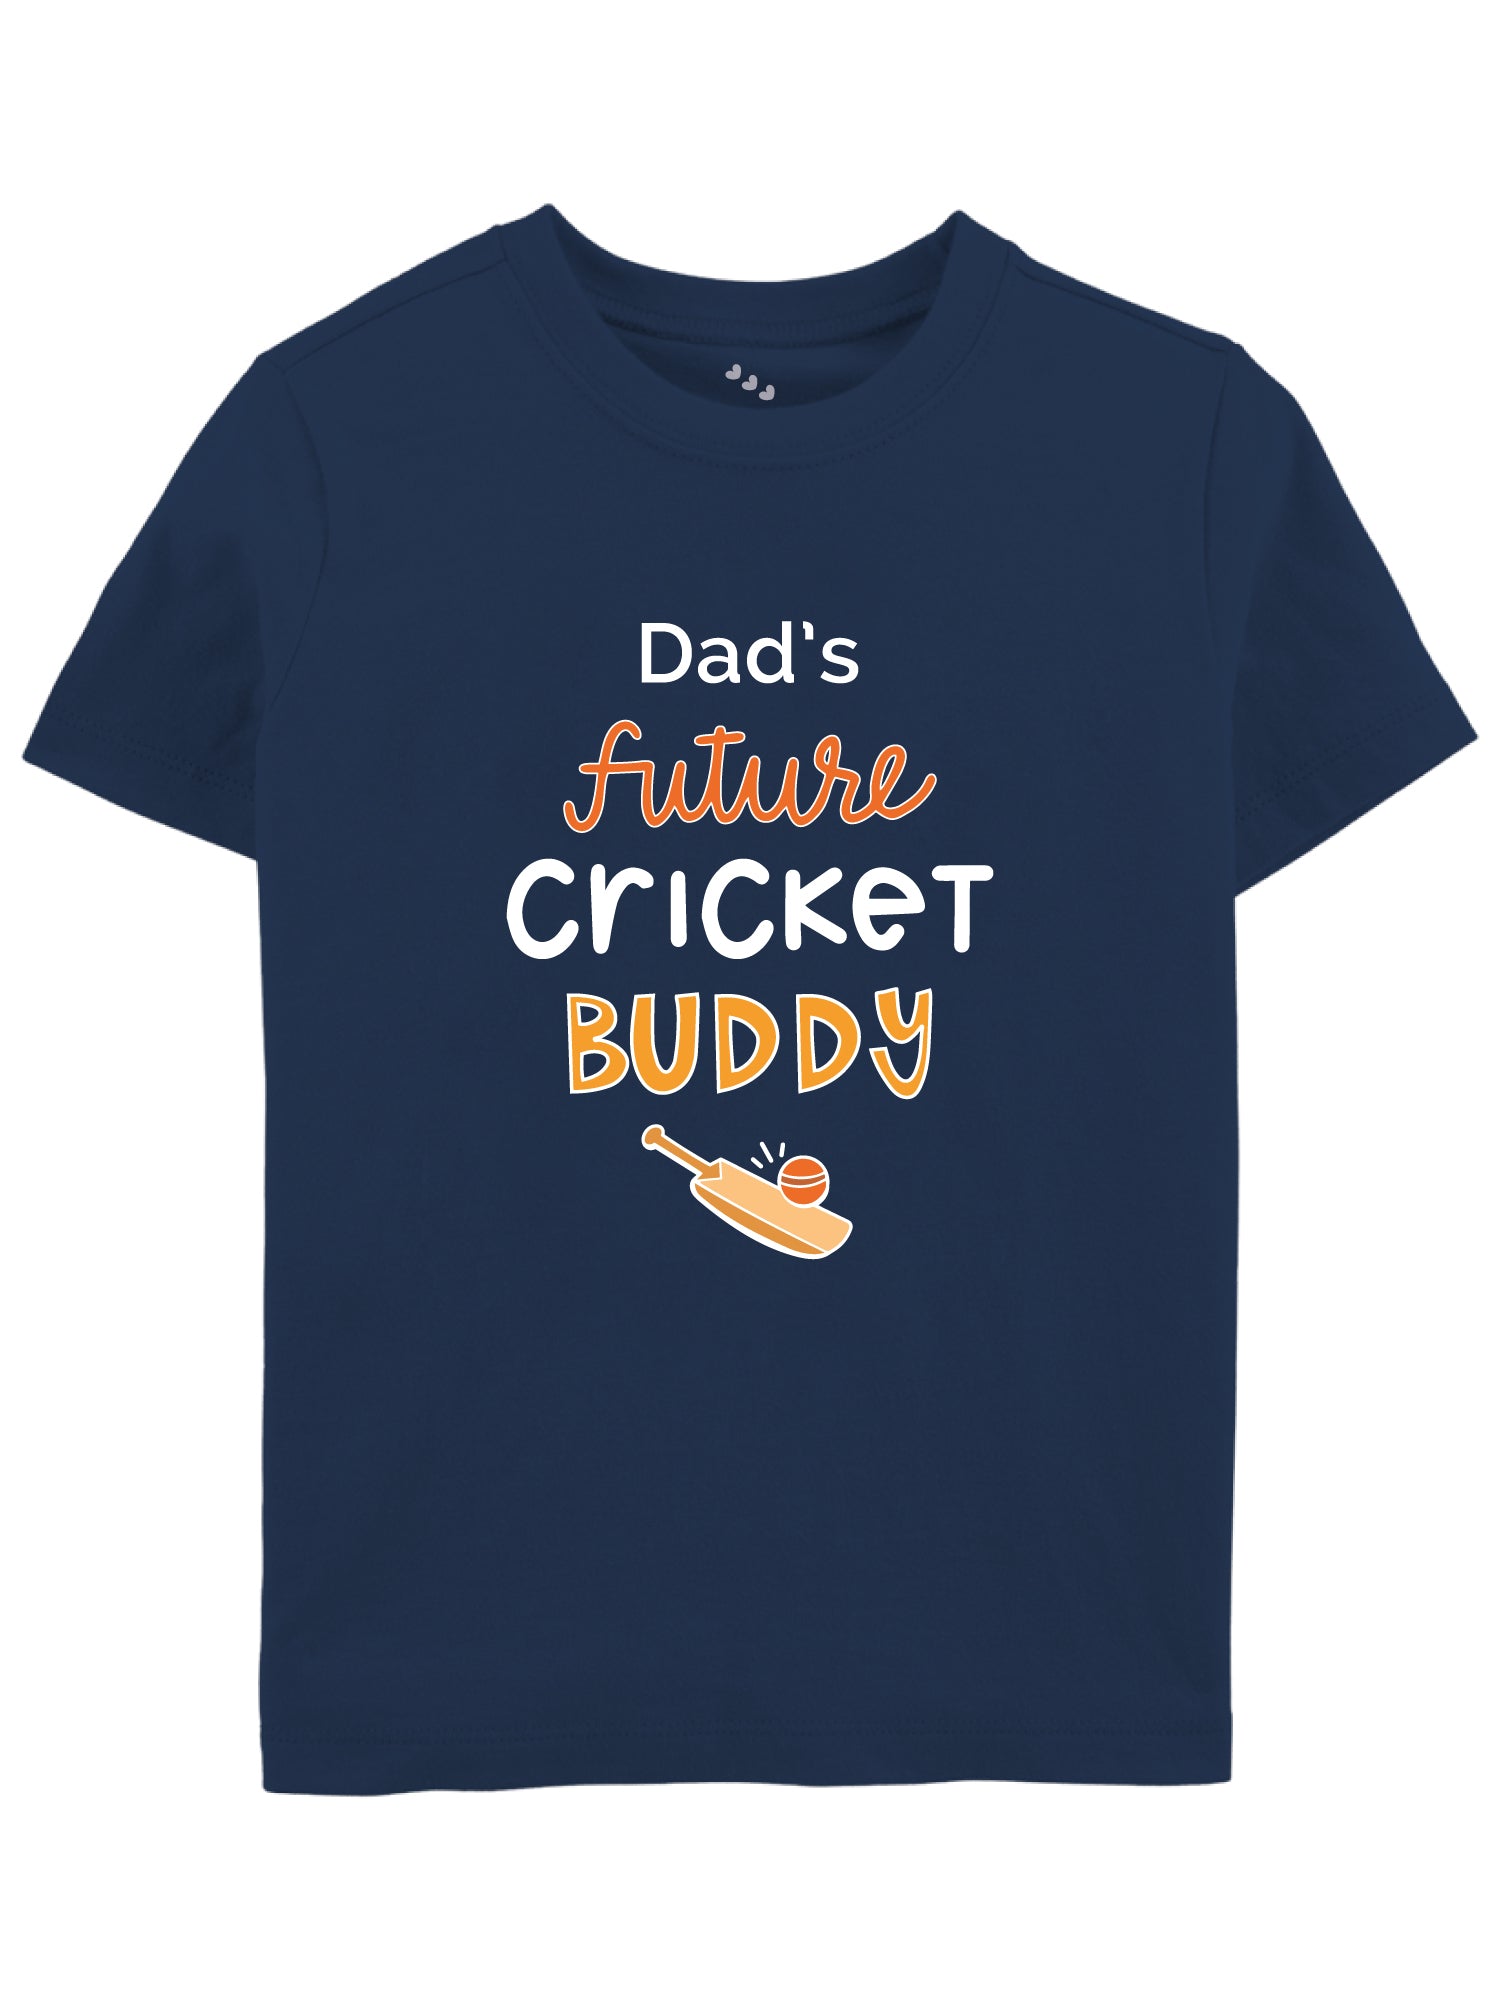 Dad's Future Cricket Buddy - Tee